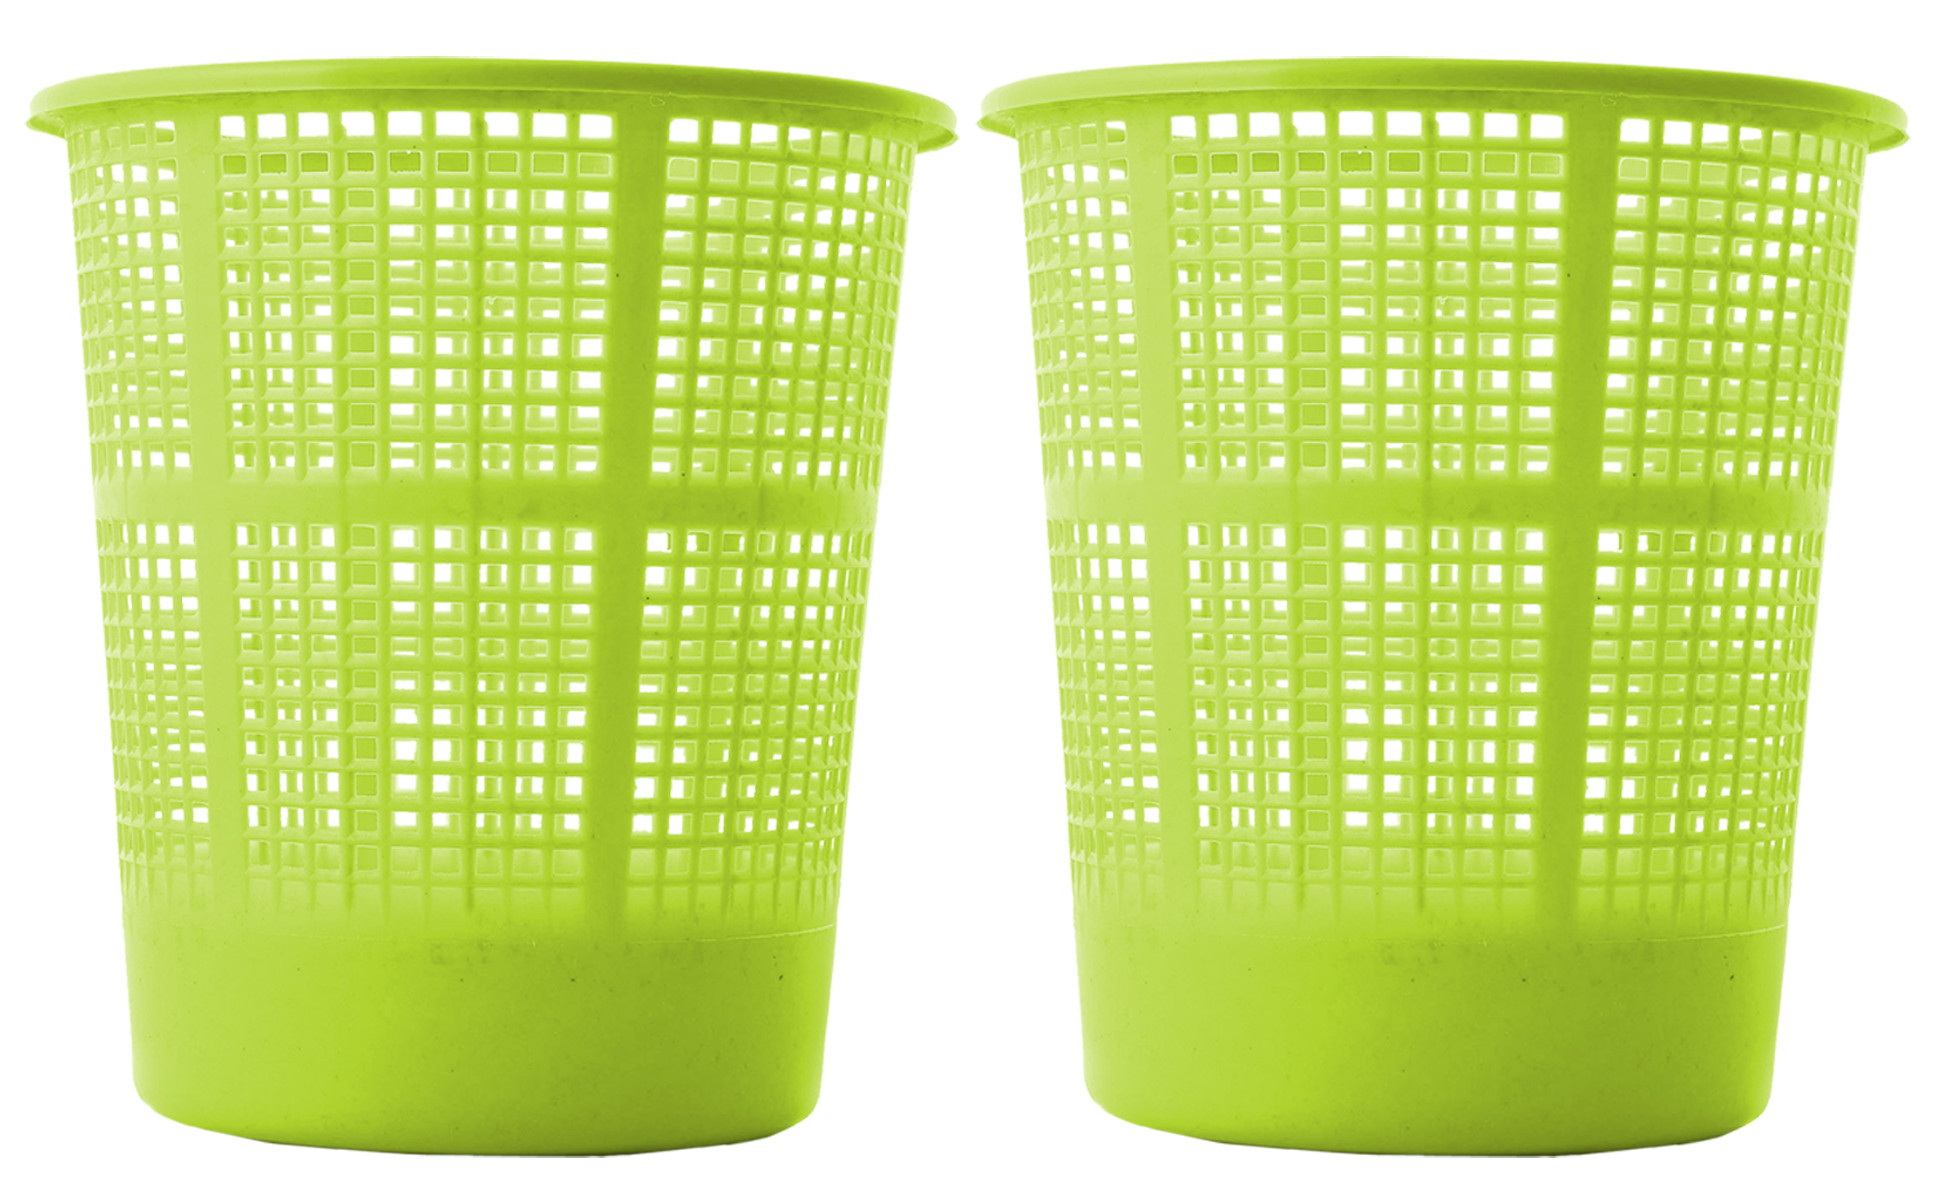 Kuber Industries Plastic Mesh Dustbin Garbage Bin for Office use, School, Bedroom,Kids Room, Home, Multi Purpose,5 Liters (Green)-KUBMART220